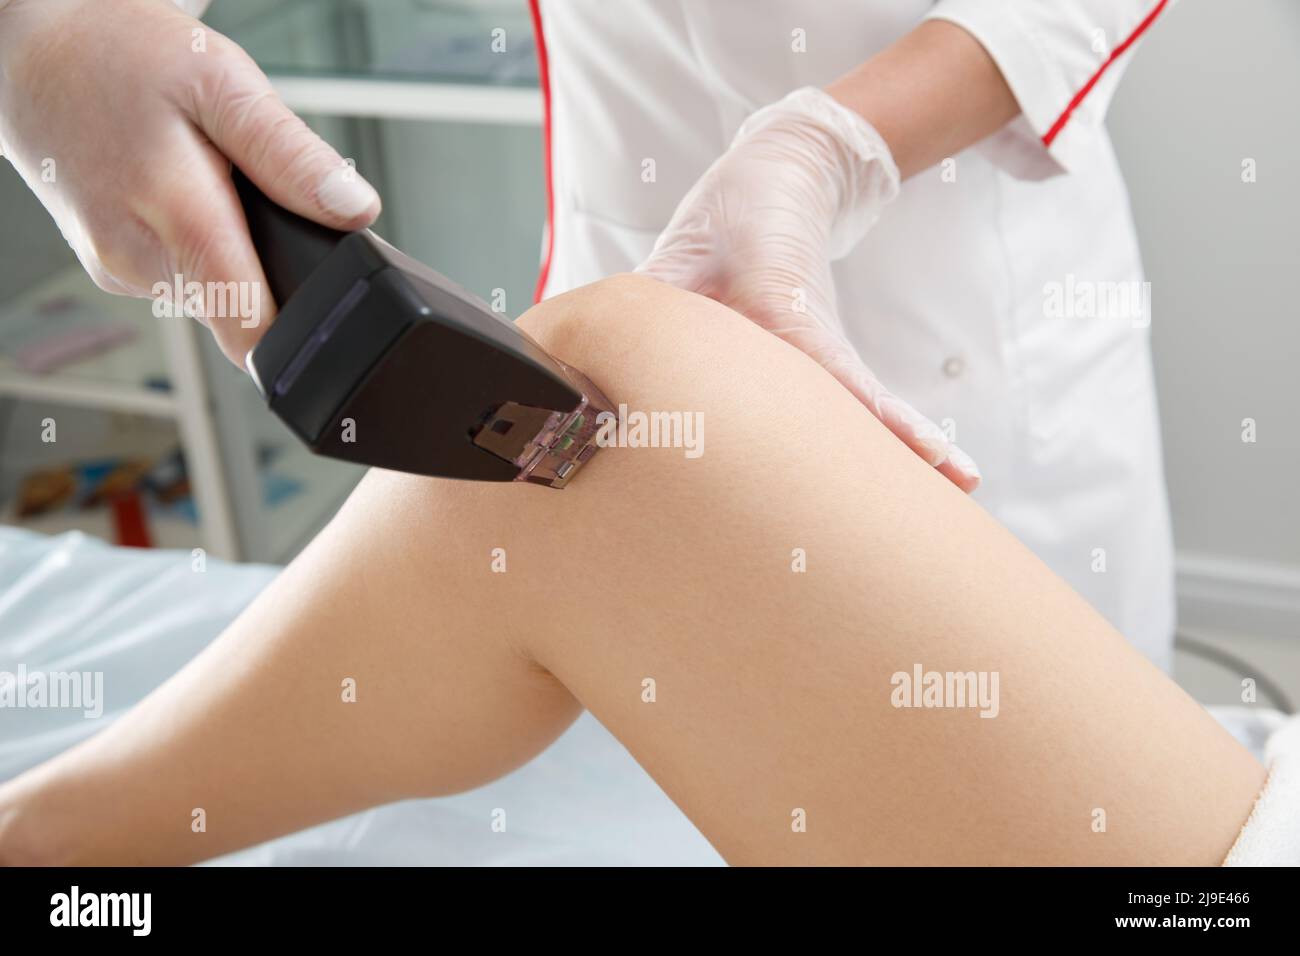 Une femme subit une procédure anti-cellulite dans une clinique de cosmétologie. Banque D'Images